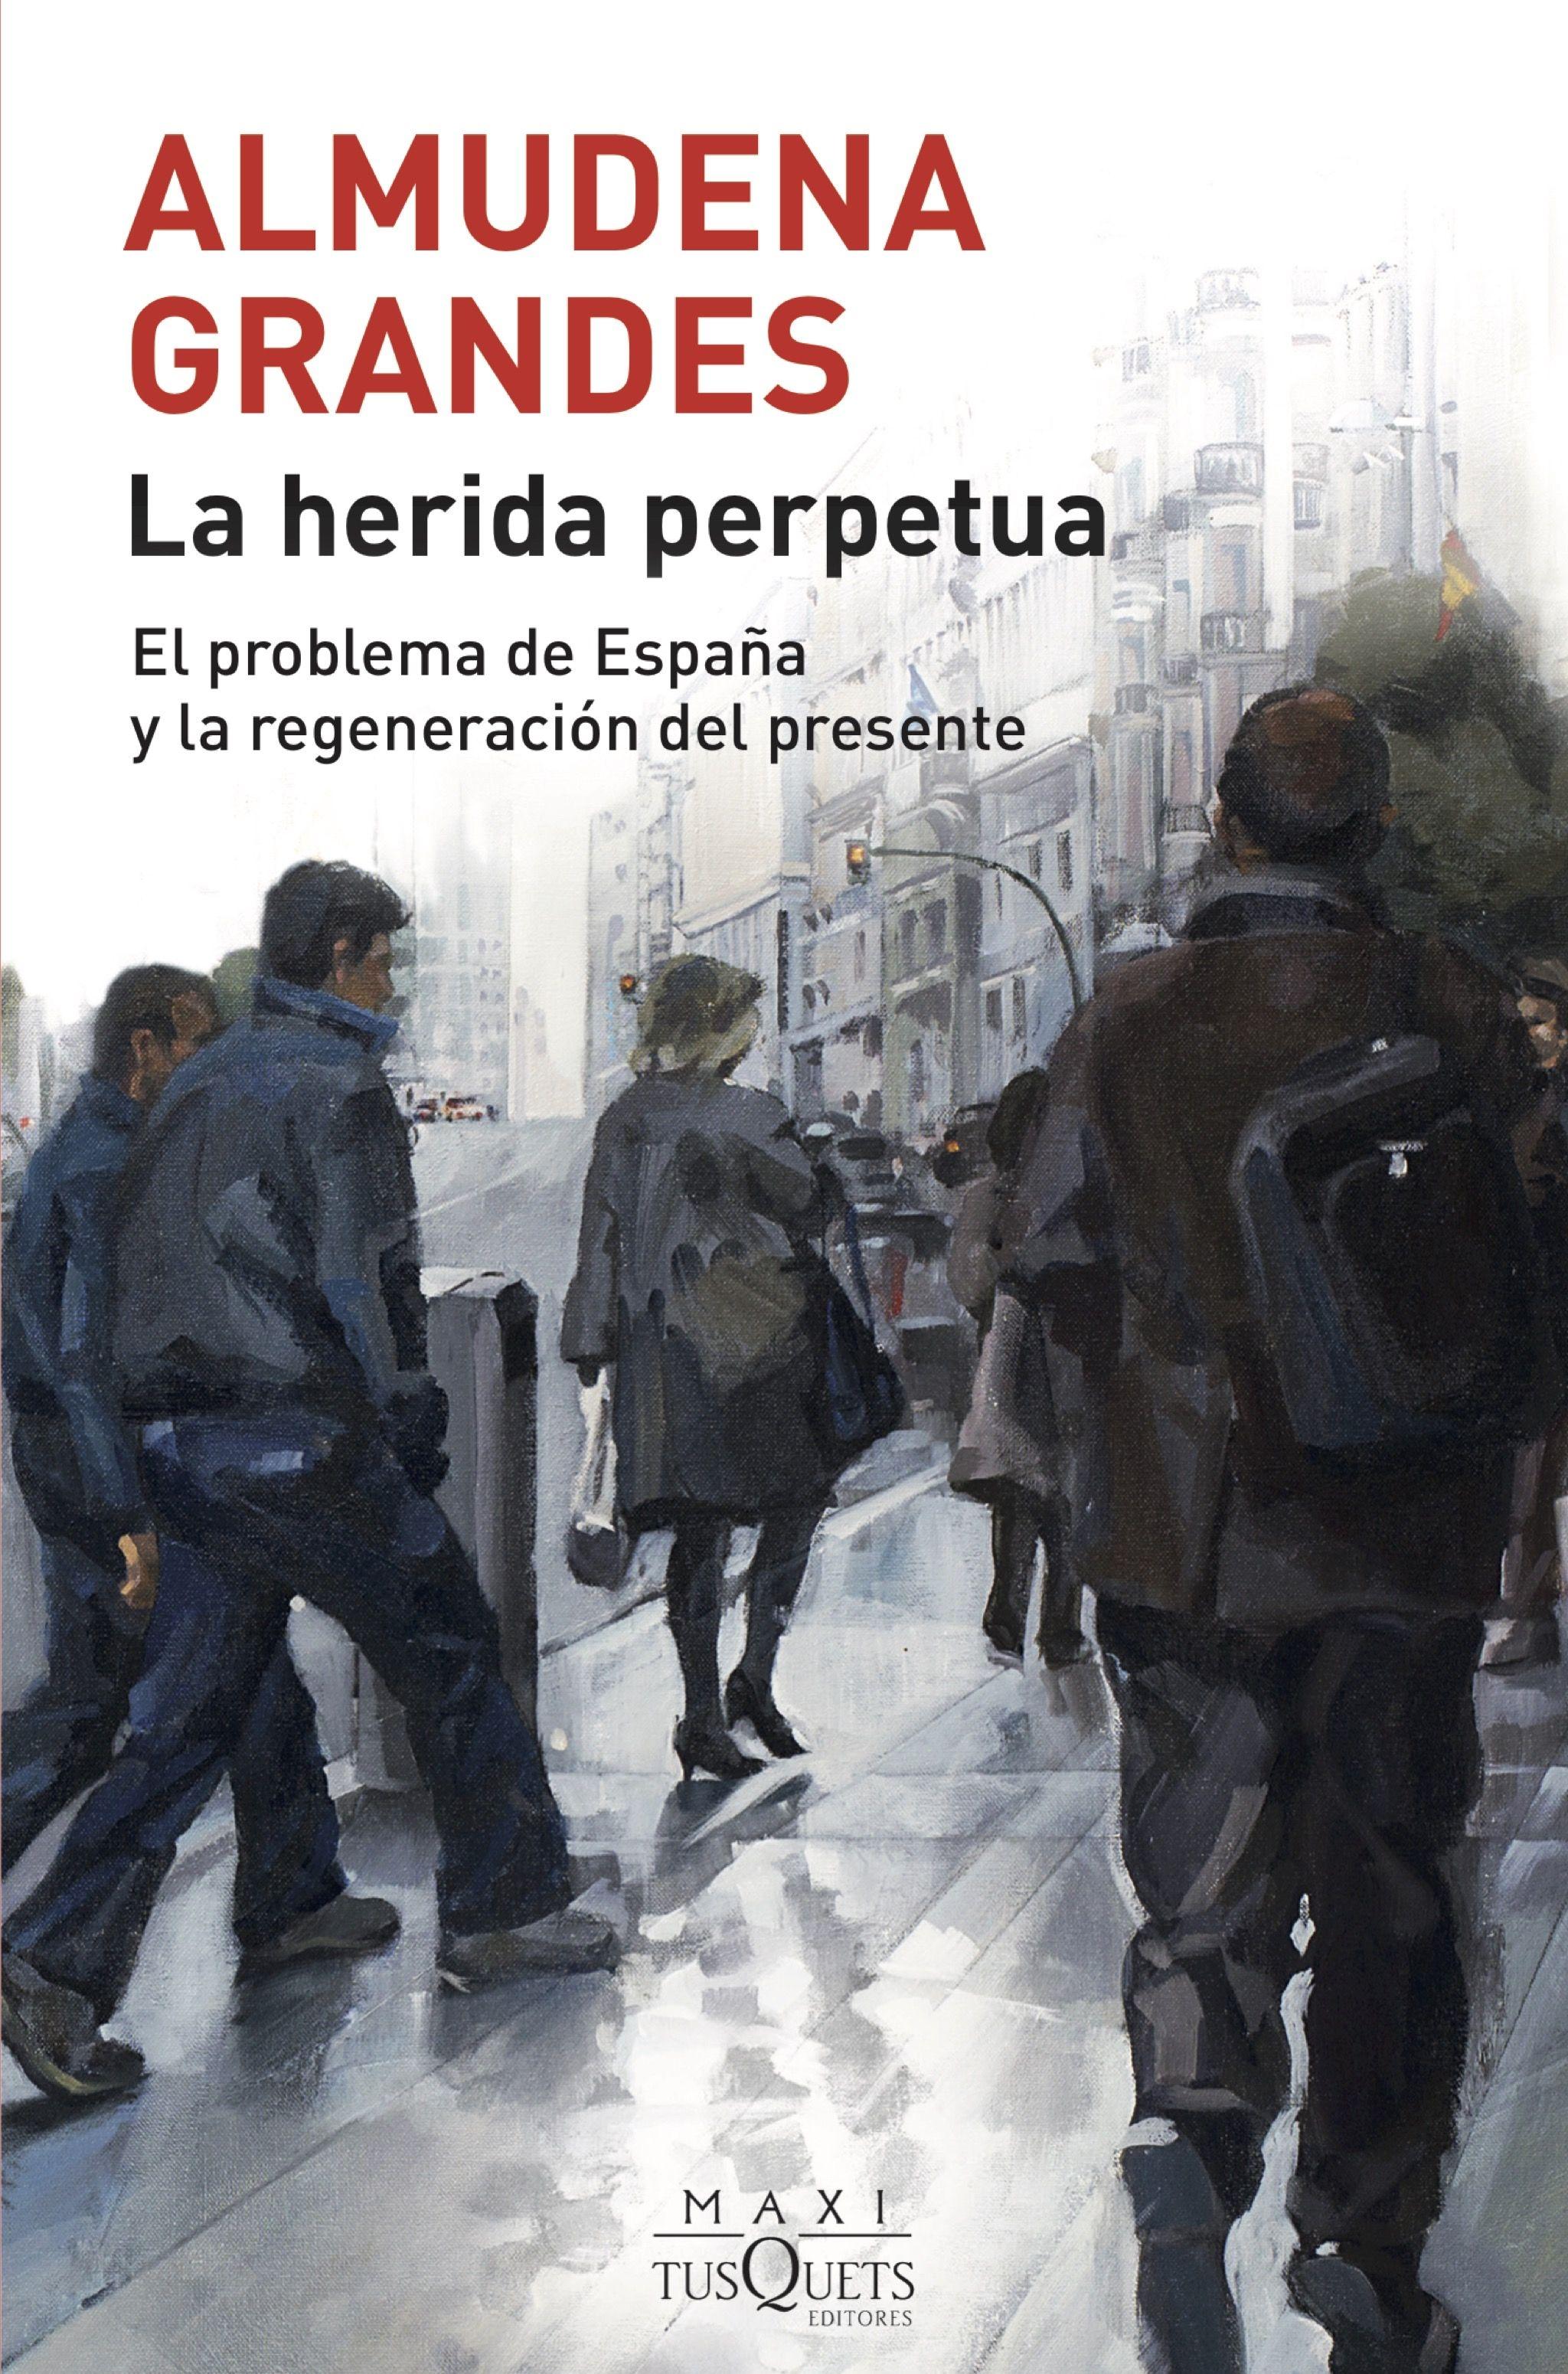 La herida perpetua "El problema de España y la regeneración del presente"